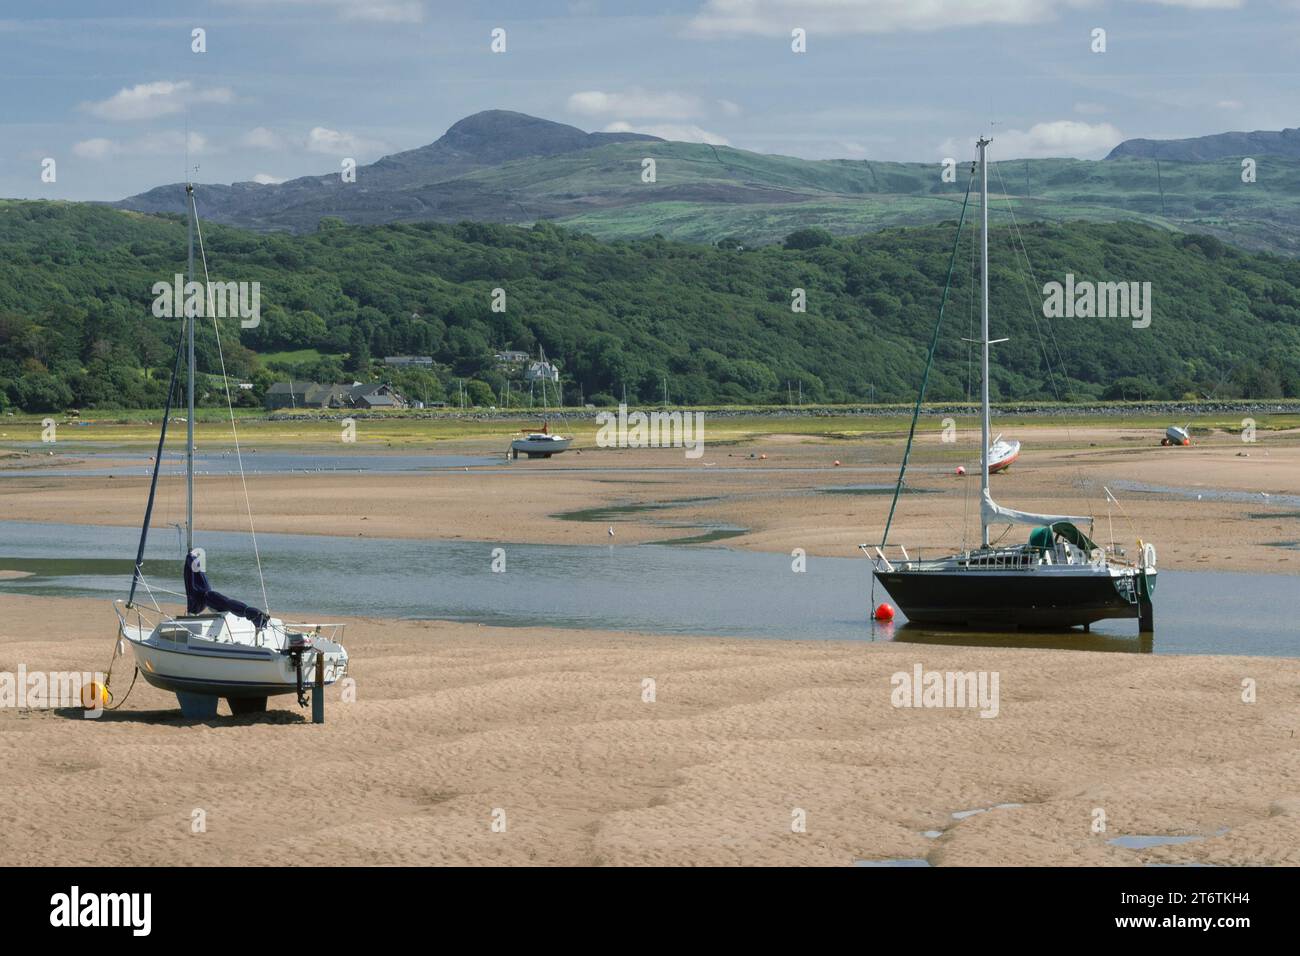 Le piccole barche a vela si siedono sulla sabbia e aspettano che arrivi la marea, ad Abersoch, nel Galles occidentale, Regno Unito Foto Stock